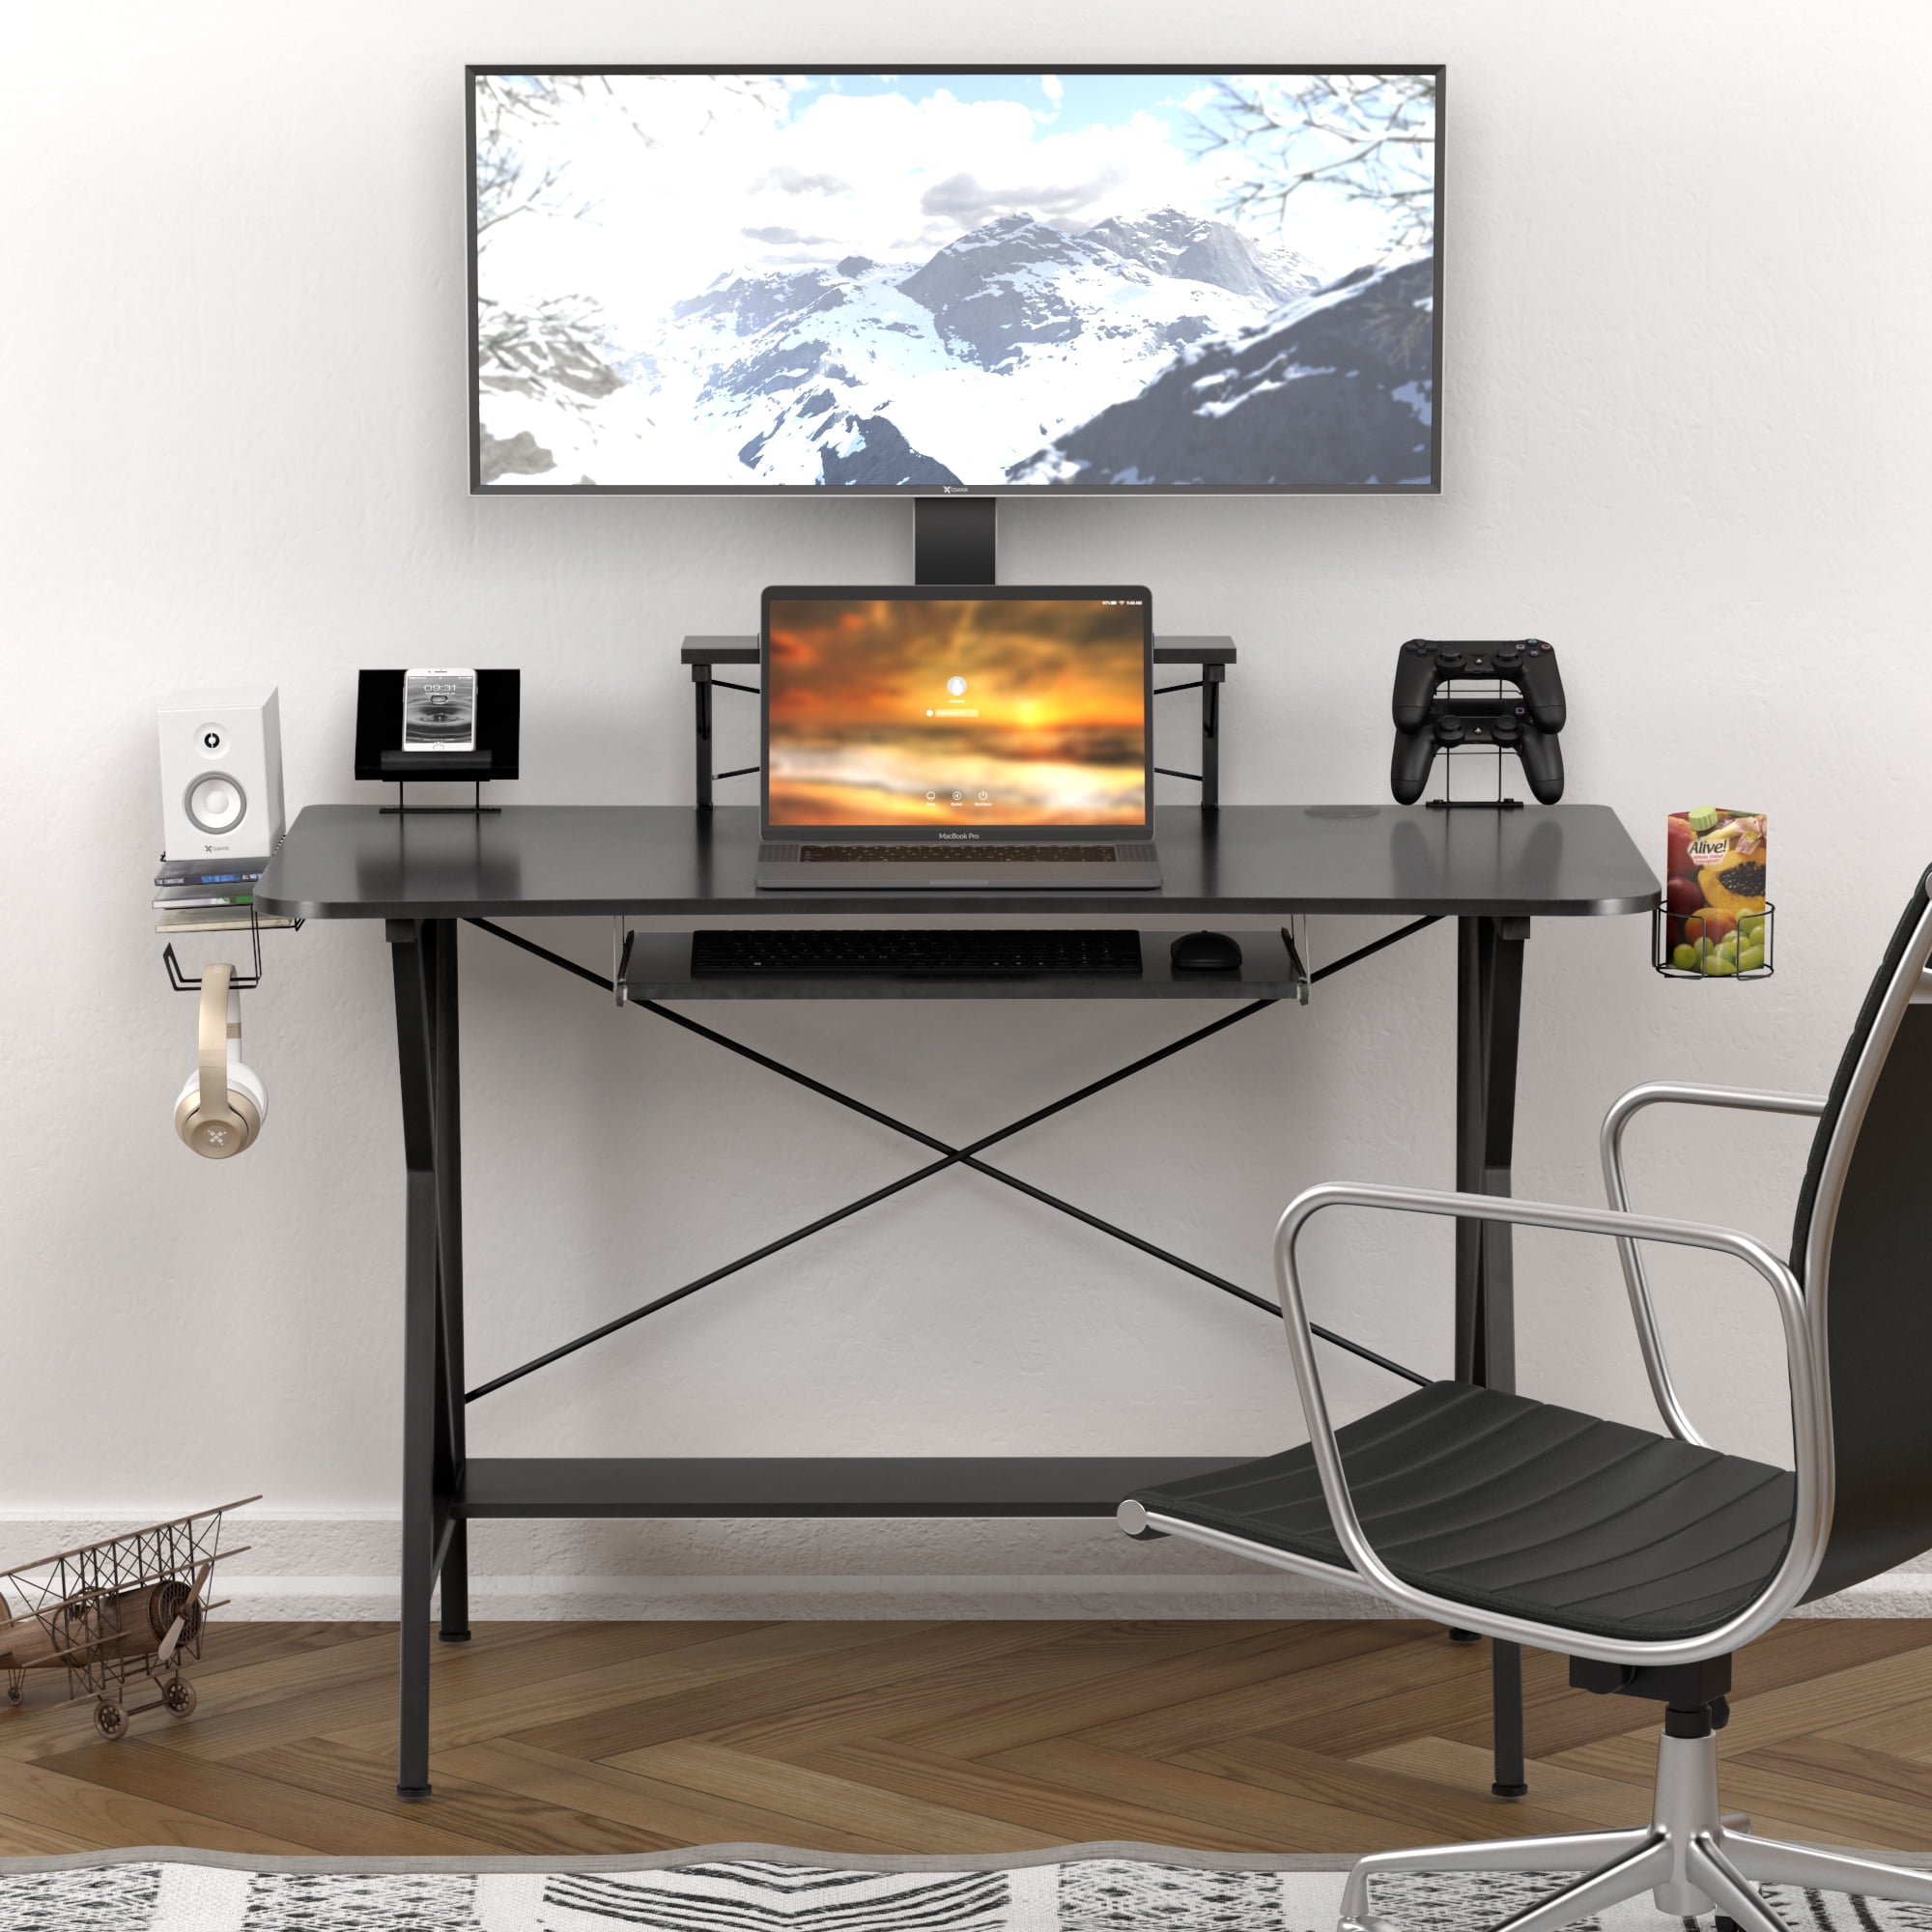 Details about   47" Gaming Desk Computer Desk Workstation Stand Shelf Cup Holder Home Office RD